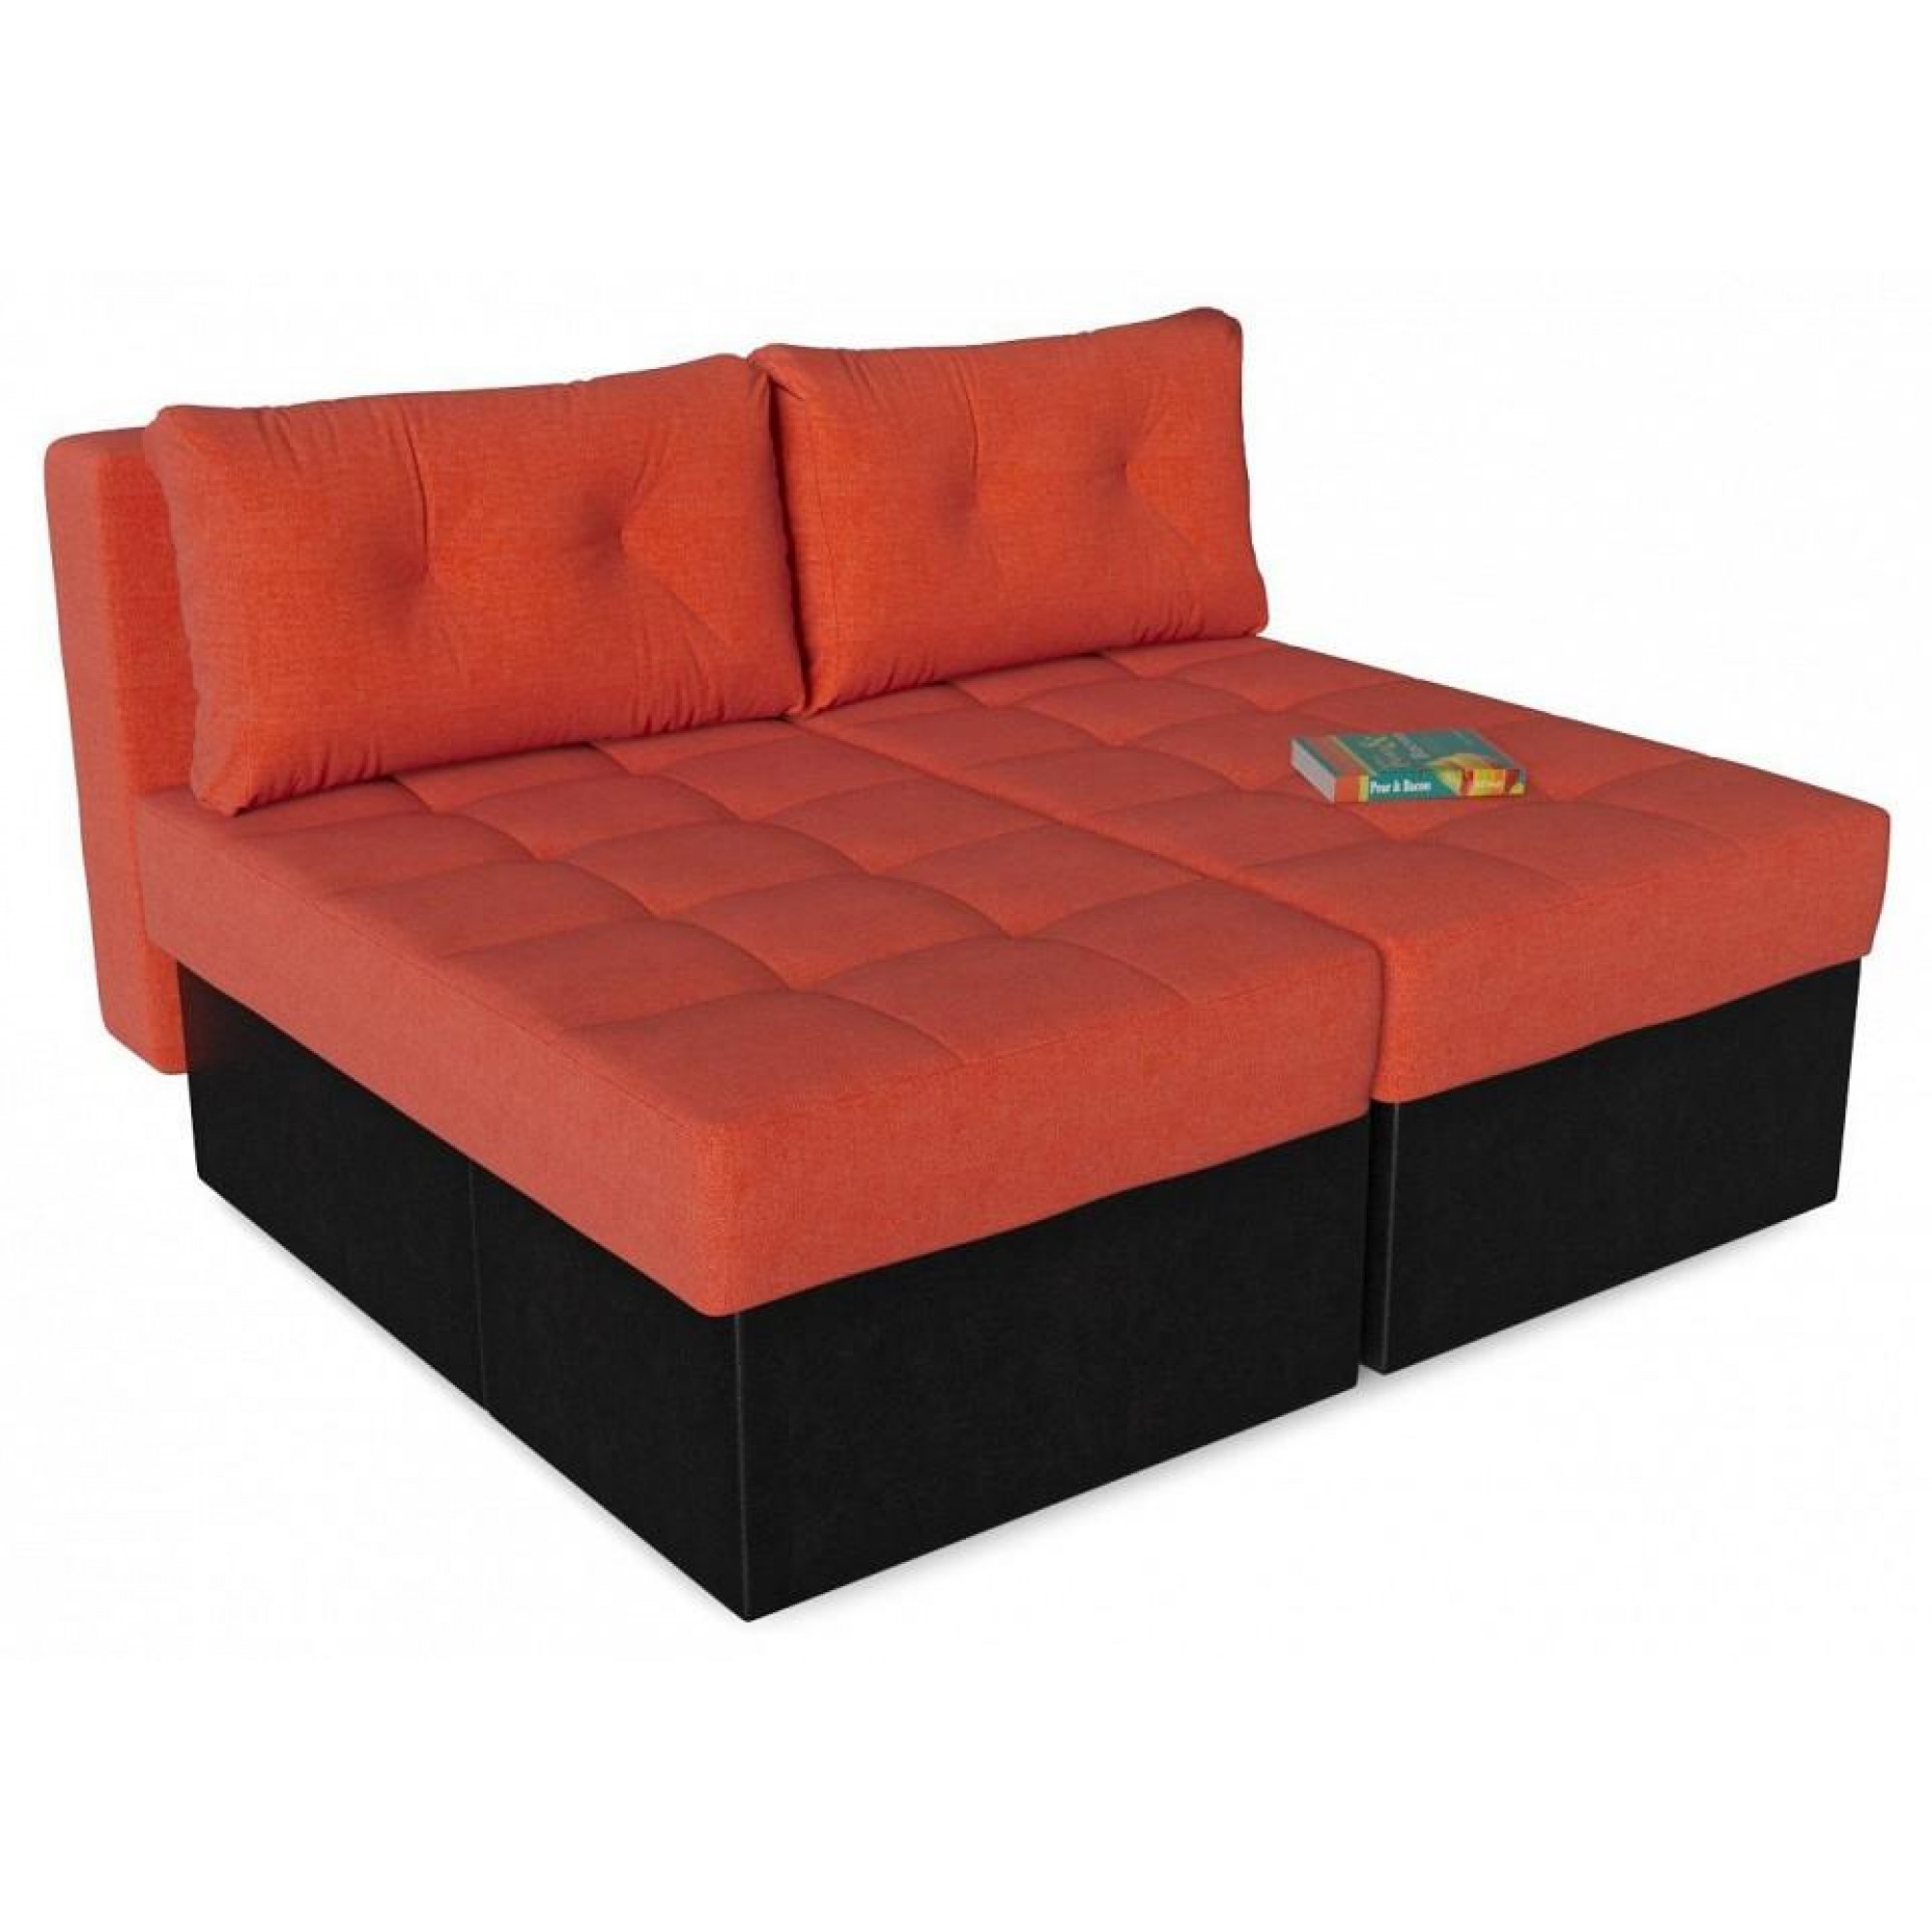 Диван-кровать Оливер Люкс (Лира) оранжевый SMR_A2491524672